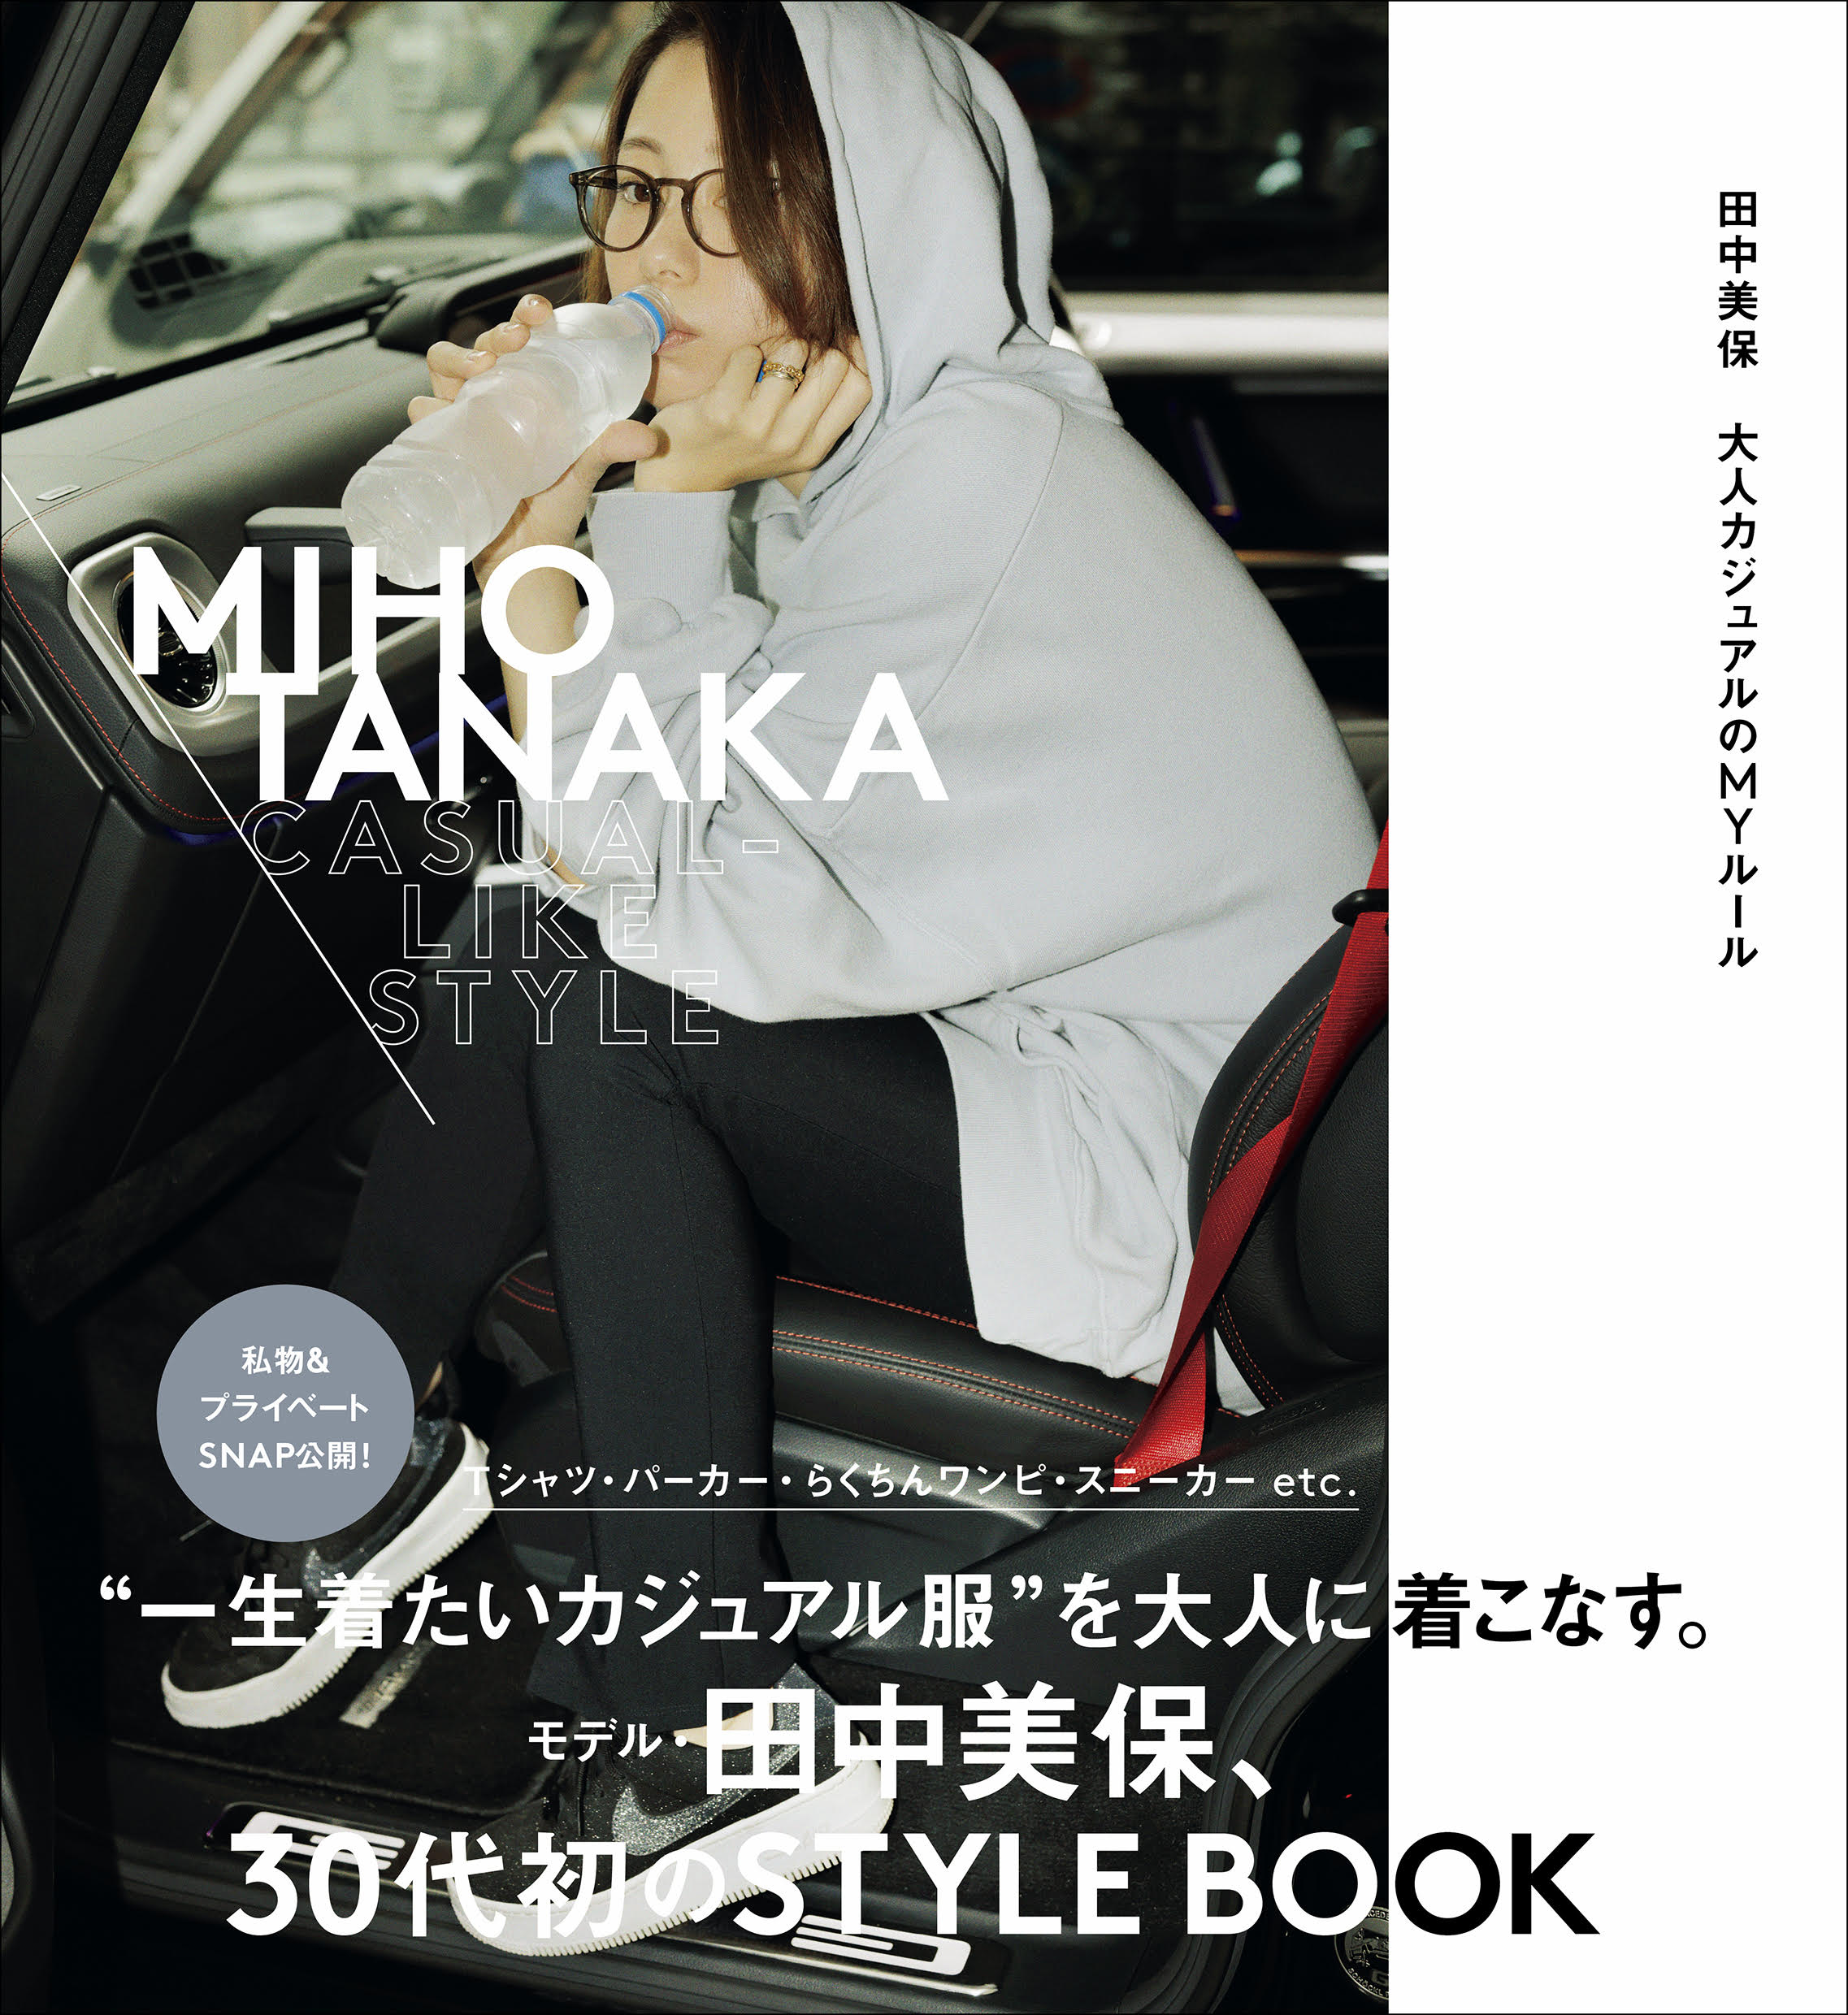 30 40代のお手本 田中美保のパーカー スニーカーがずっとオシャレな理由 Miho Tanaka Casual Like Style Bookウォッチ